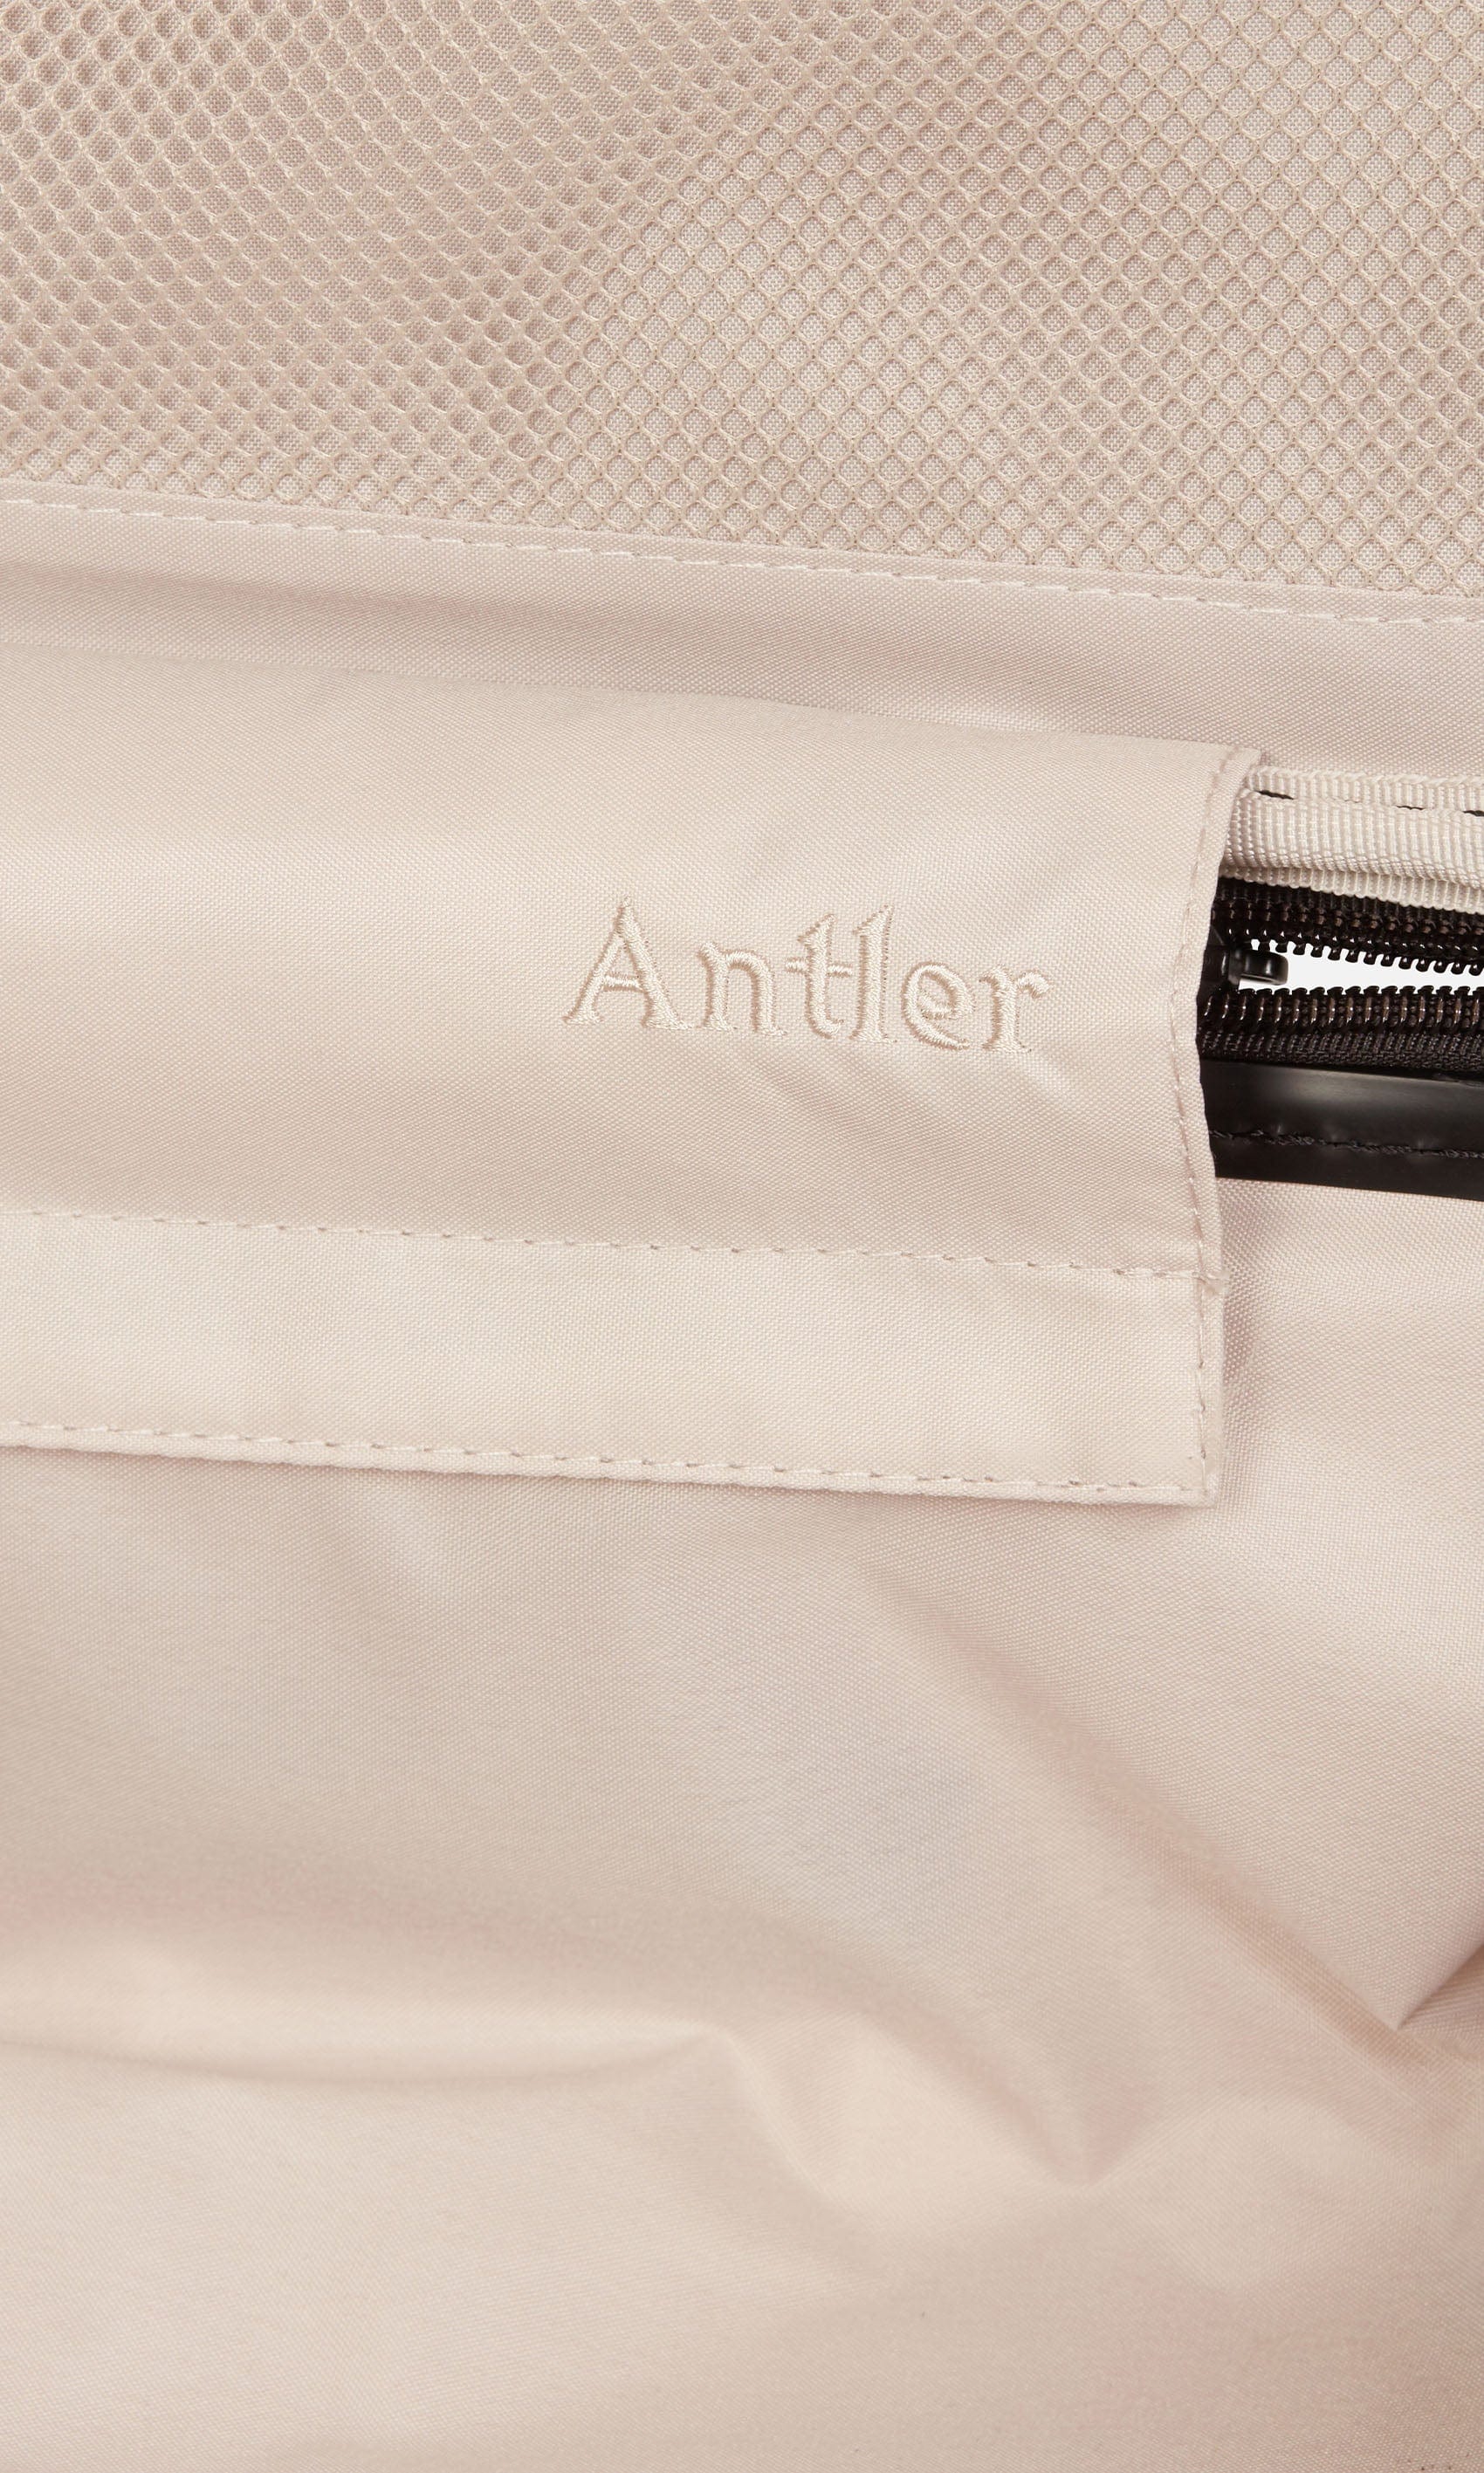 Antler Luggage -  Clifton medium in blush - Hard Suitcases Clifton Medium Suitcase Blush (Pink) | Hard Suitcase | Antler UK